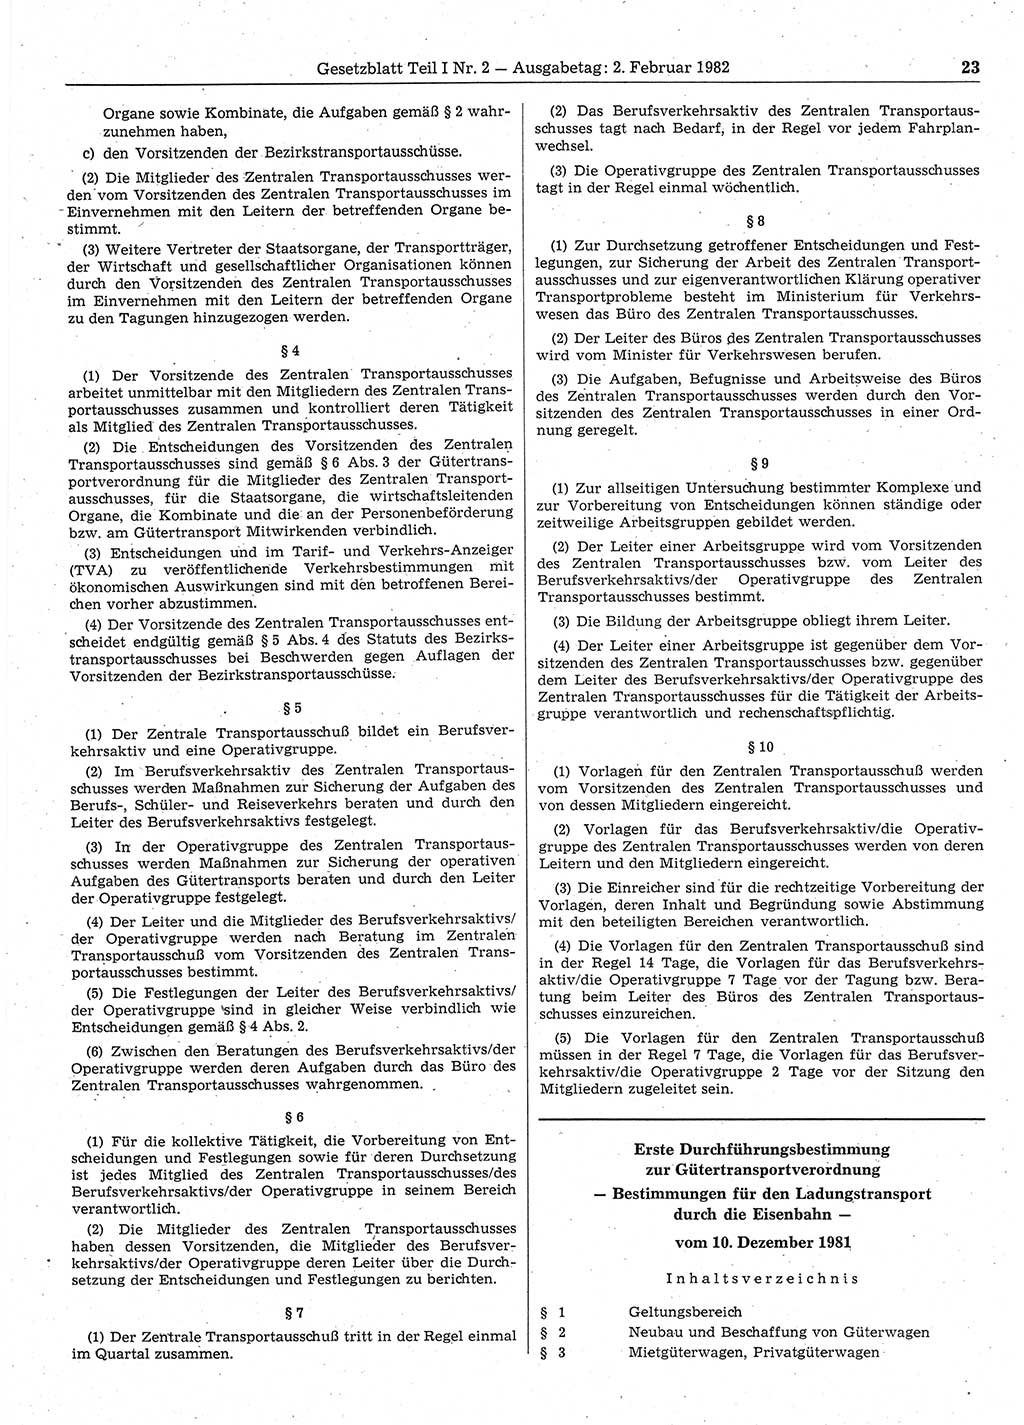 Gesetzblatt (GBl.) der Deutschen Demokratischen Republik (DDR) Teil Ⅰ 1982, Seite 23 (GBl. DDR Ⅰ 1982, S. 23)